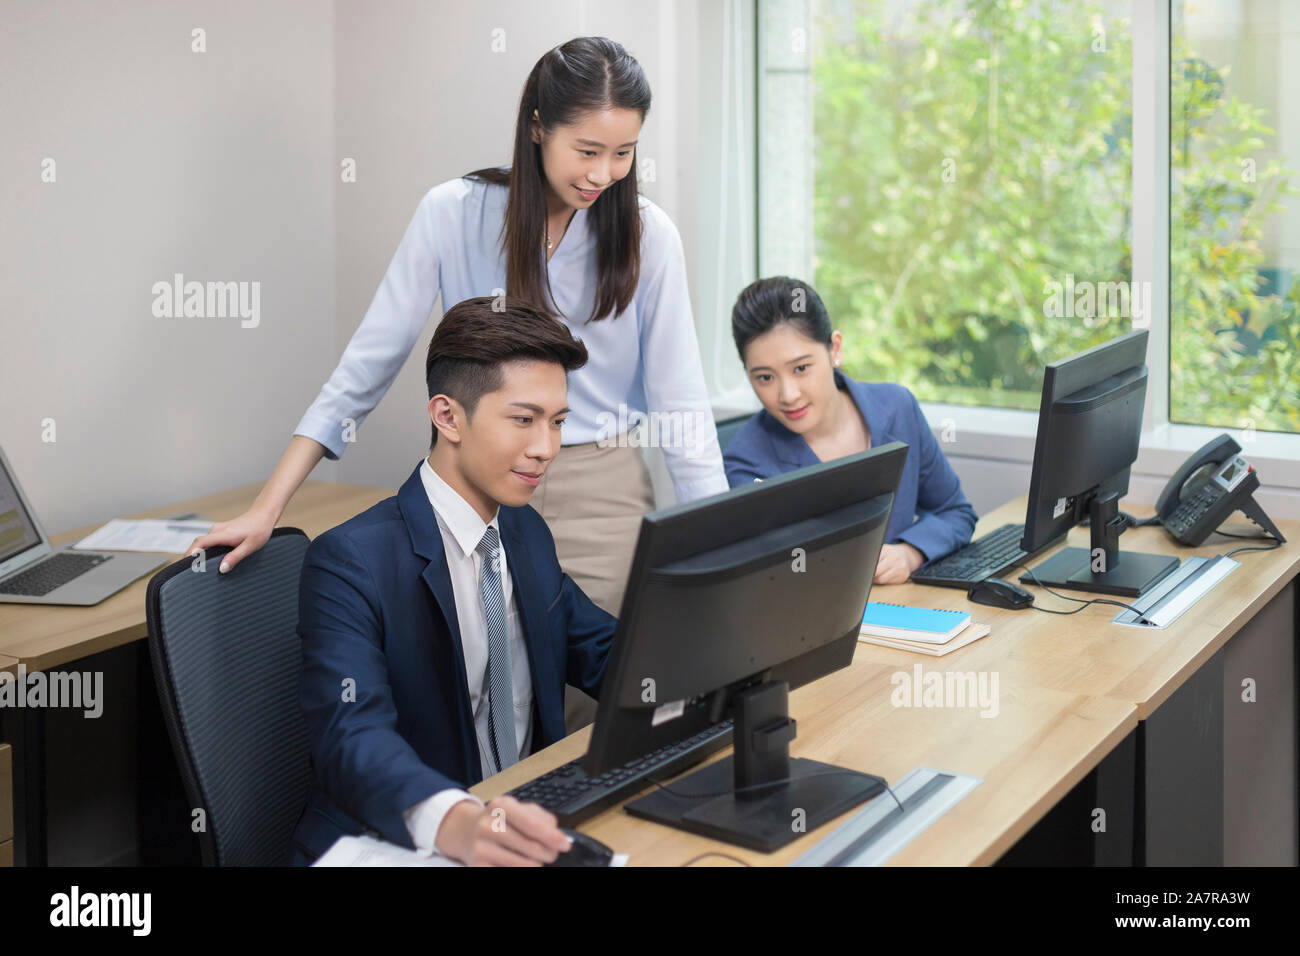 Tres jóvenes varones y mujeres sonrientes empresarios mirando un monitor de ordenador de uno de ellos mientras está trabajando en un escritorio en una oficina. Foto de stock